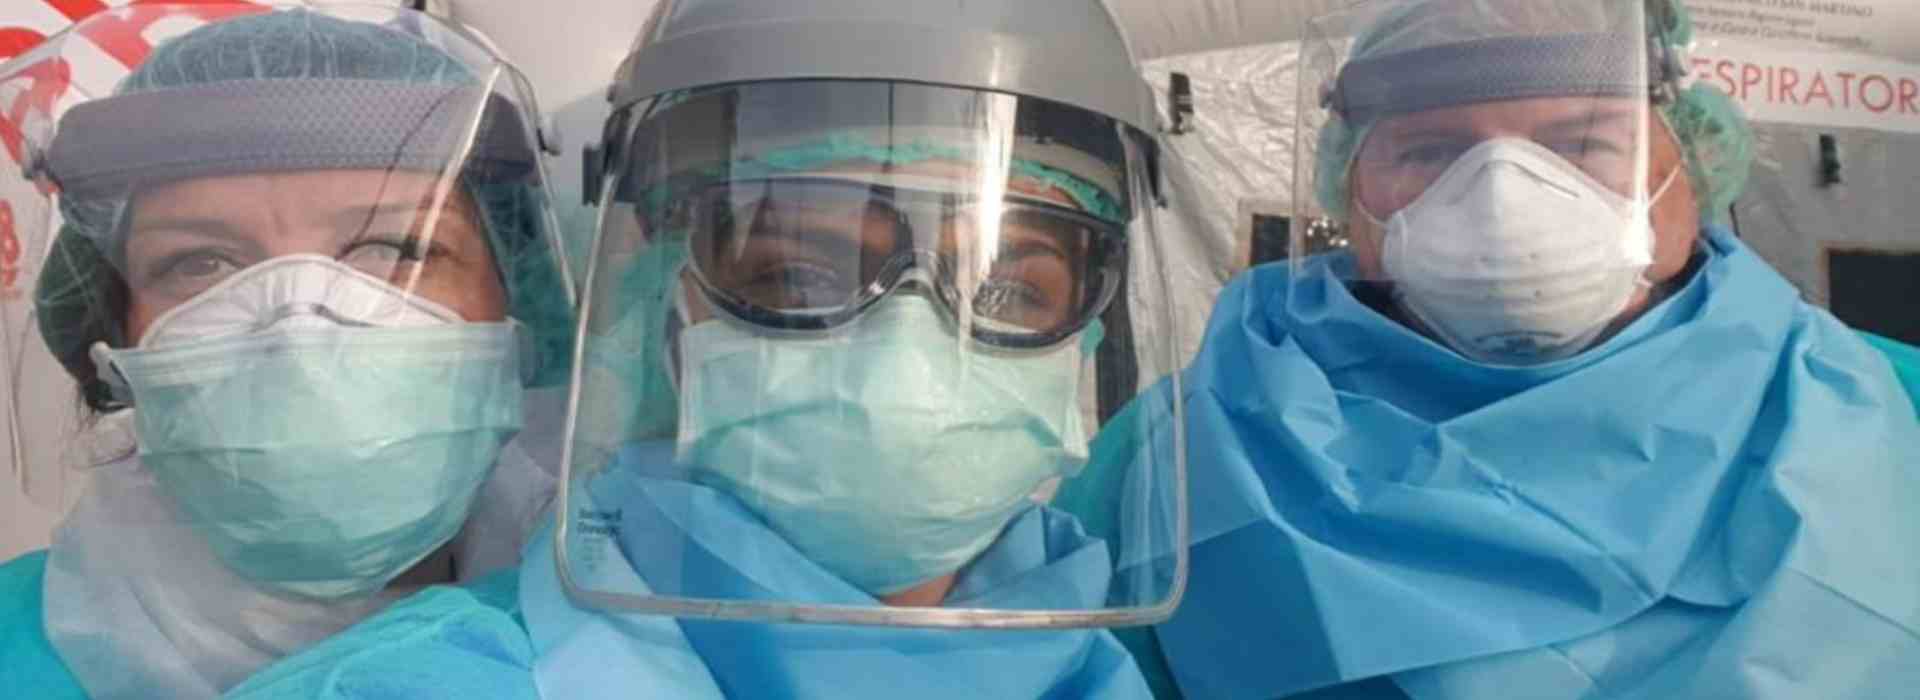 operatori sanitari a lavoro con maschere anti-covid